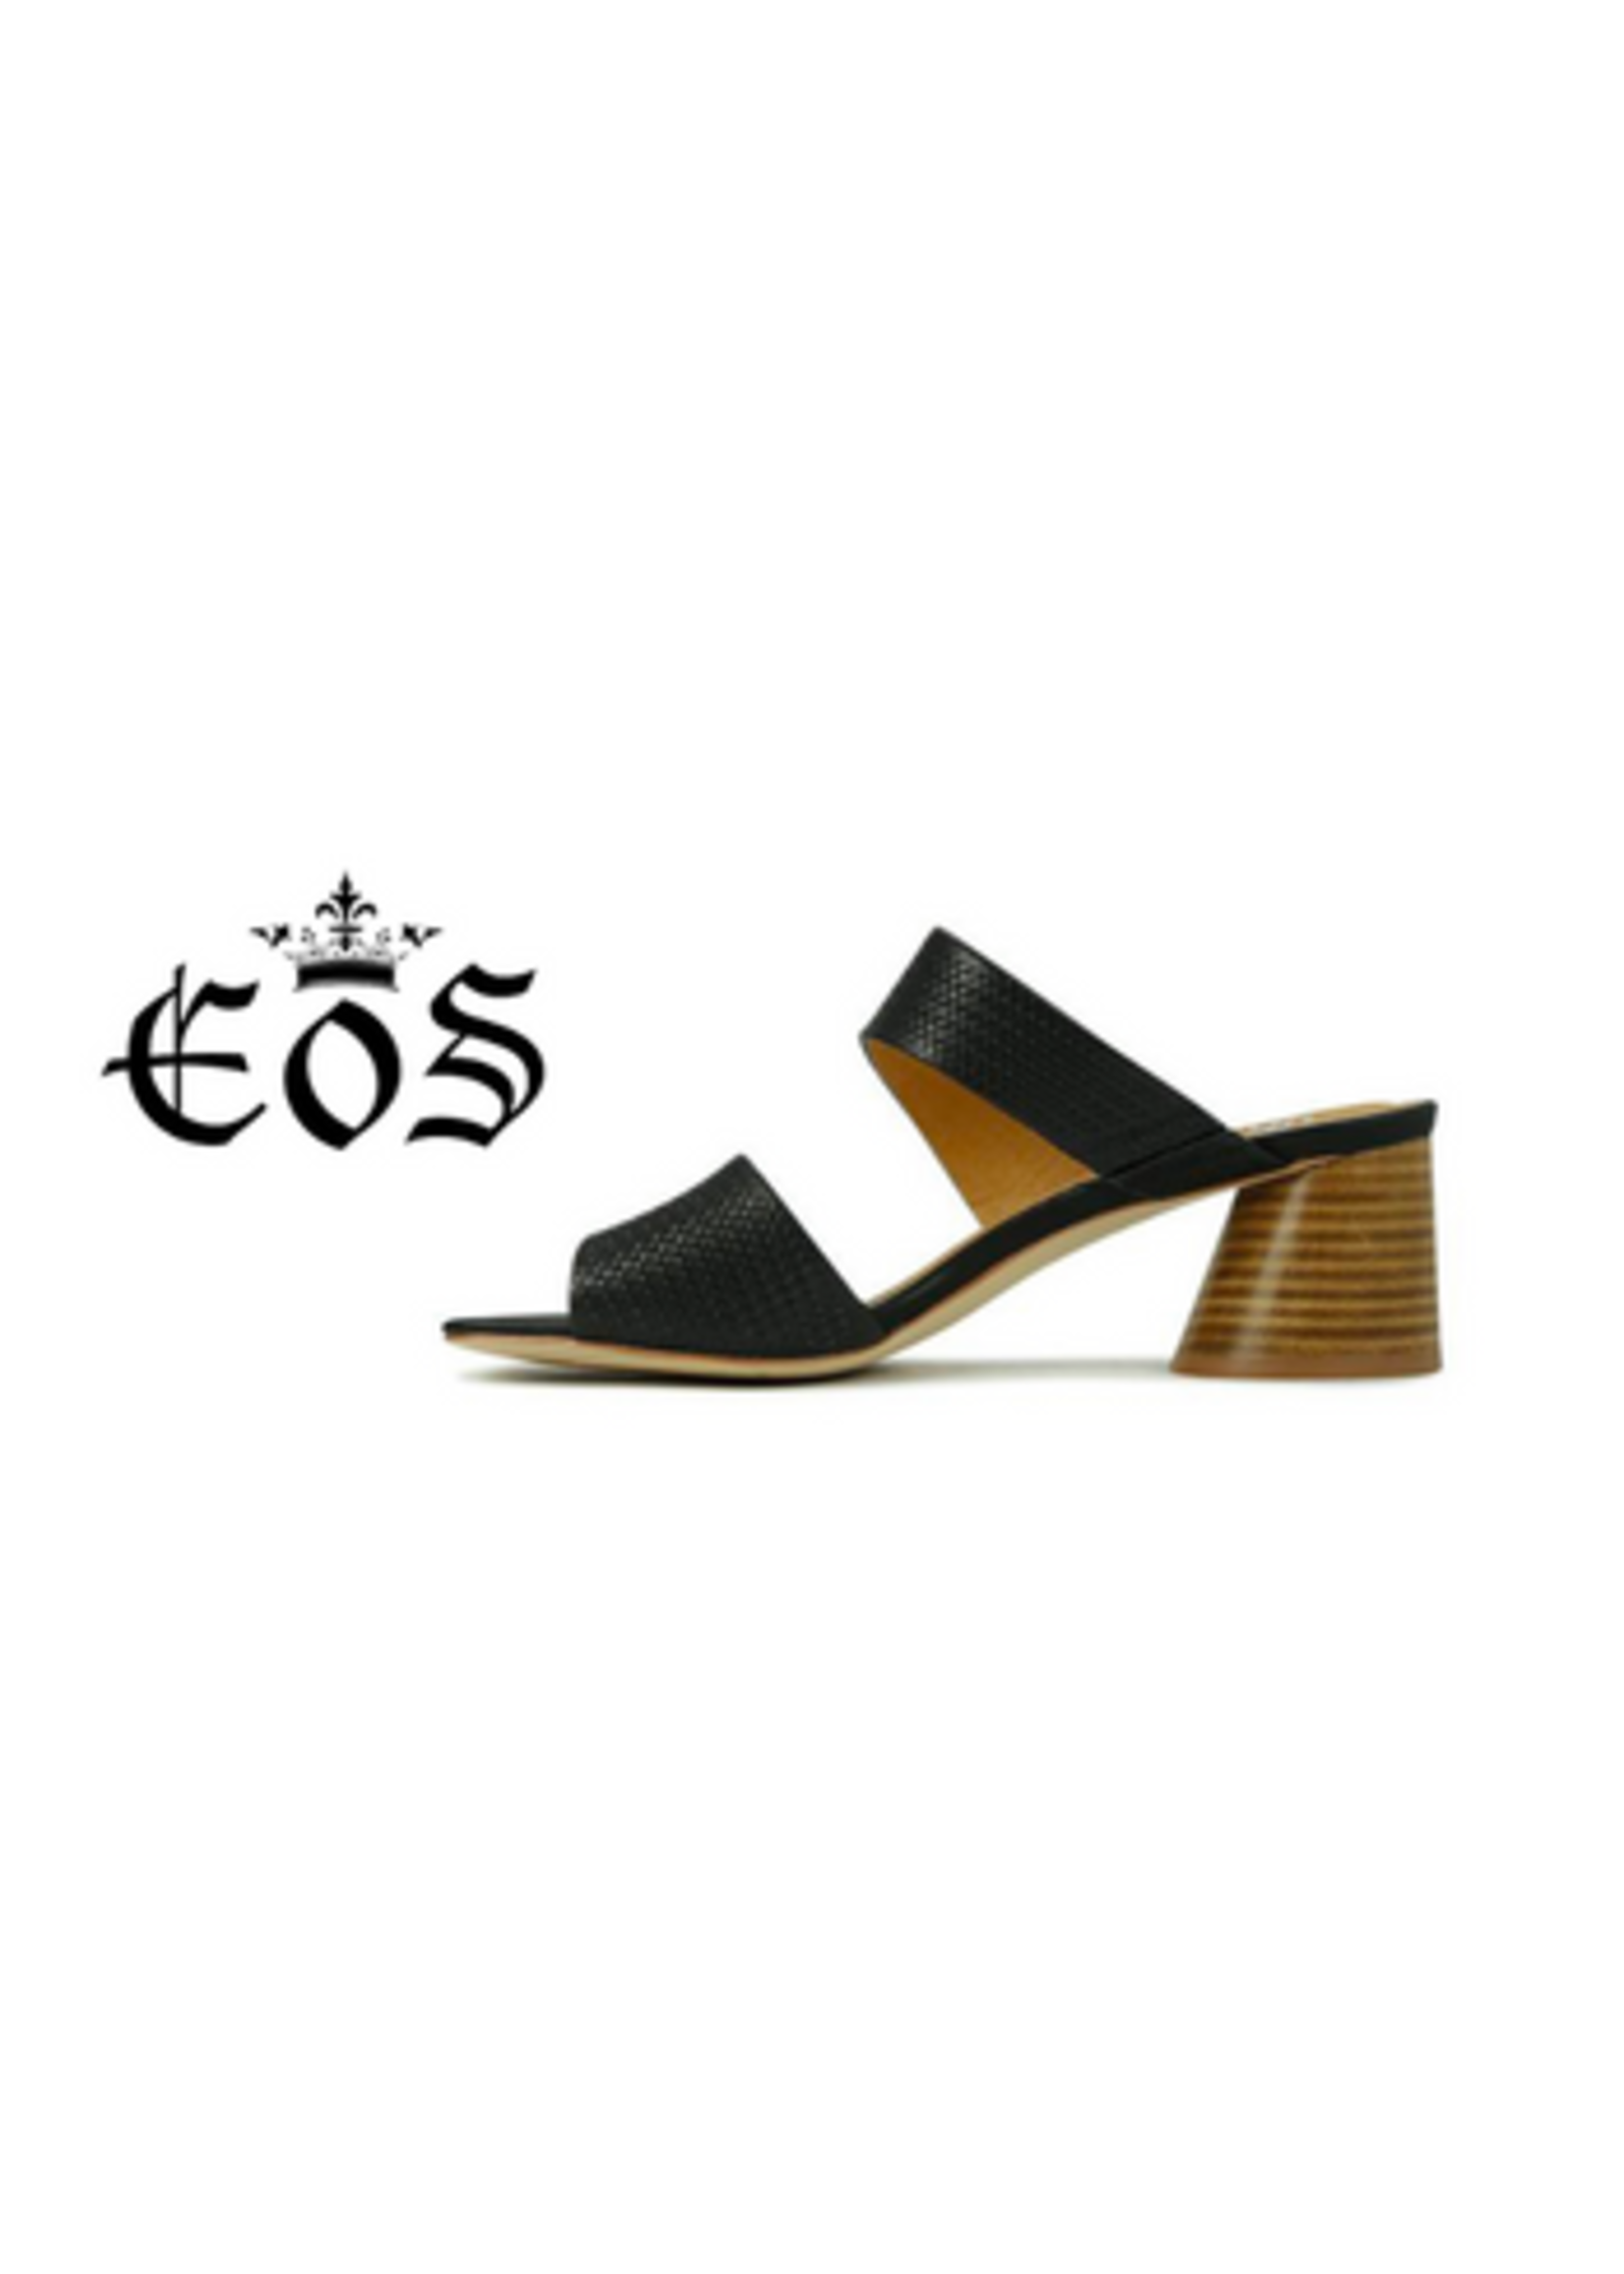 EOS Footwear Peta in Aperol Leather